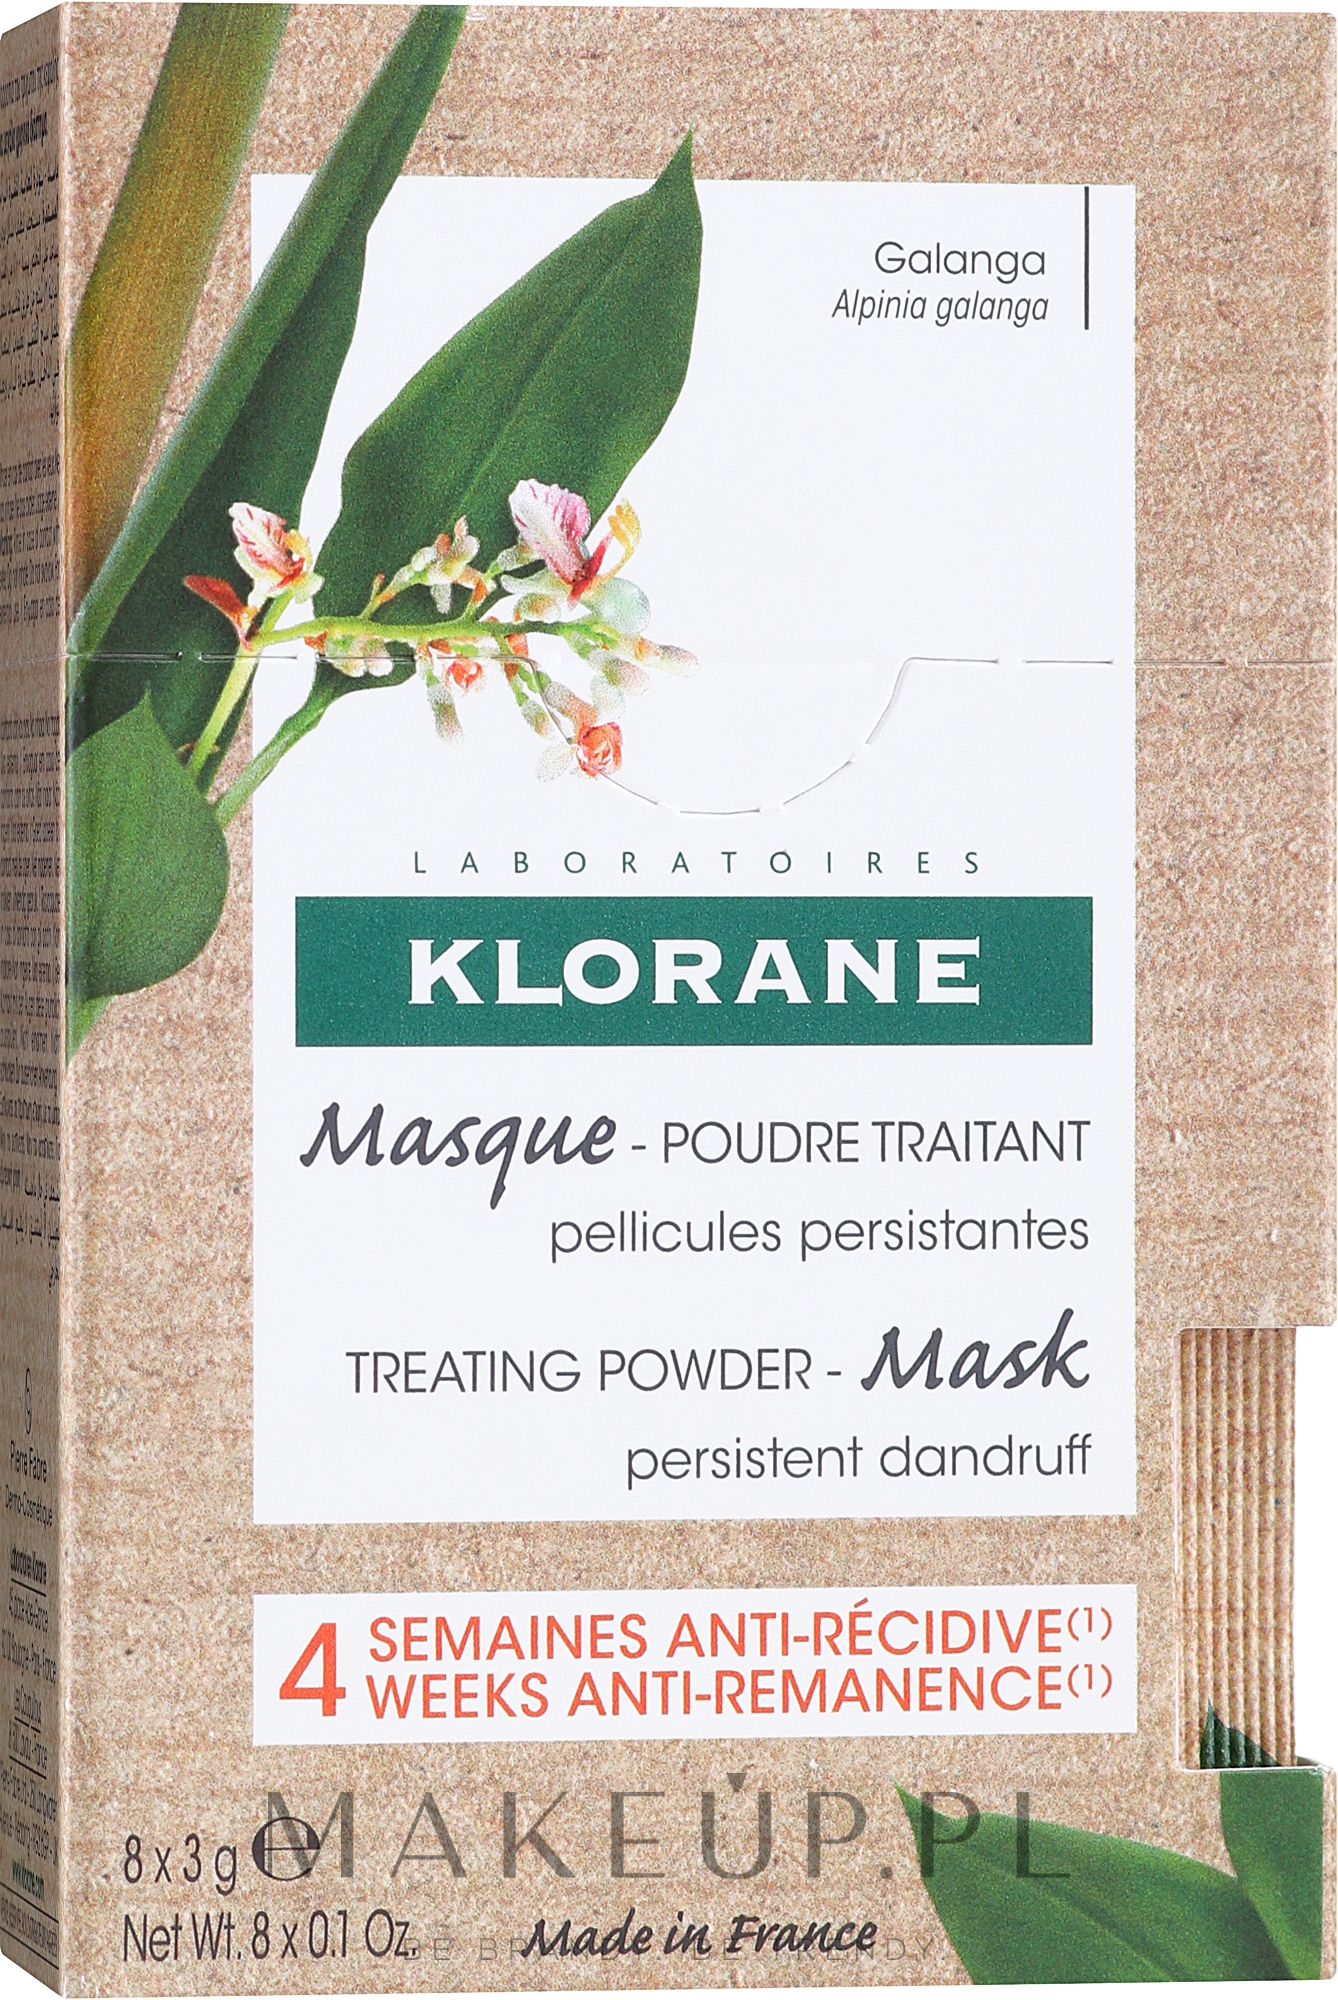 Maska do włosów do leczenia łupieżu - Klorane Galanga Hair Mask — Zdjęcie 8 x 3 g